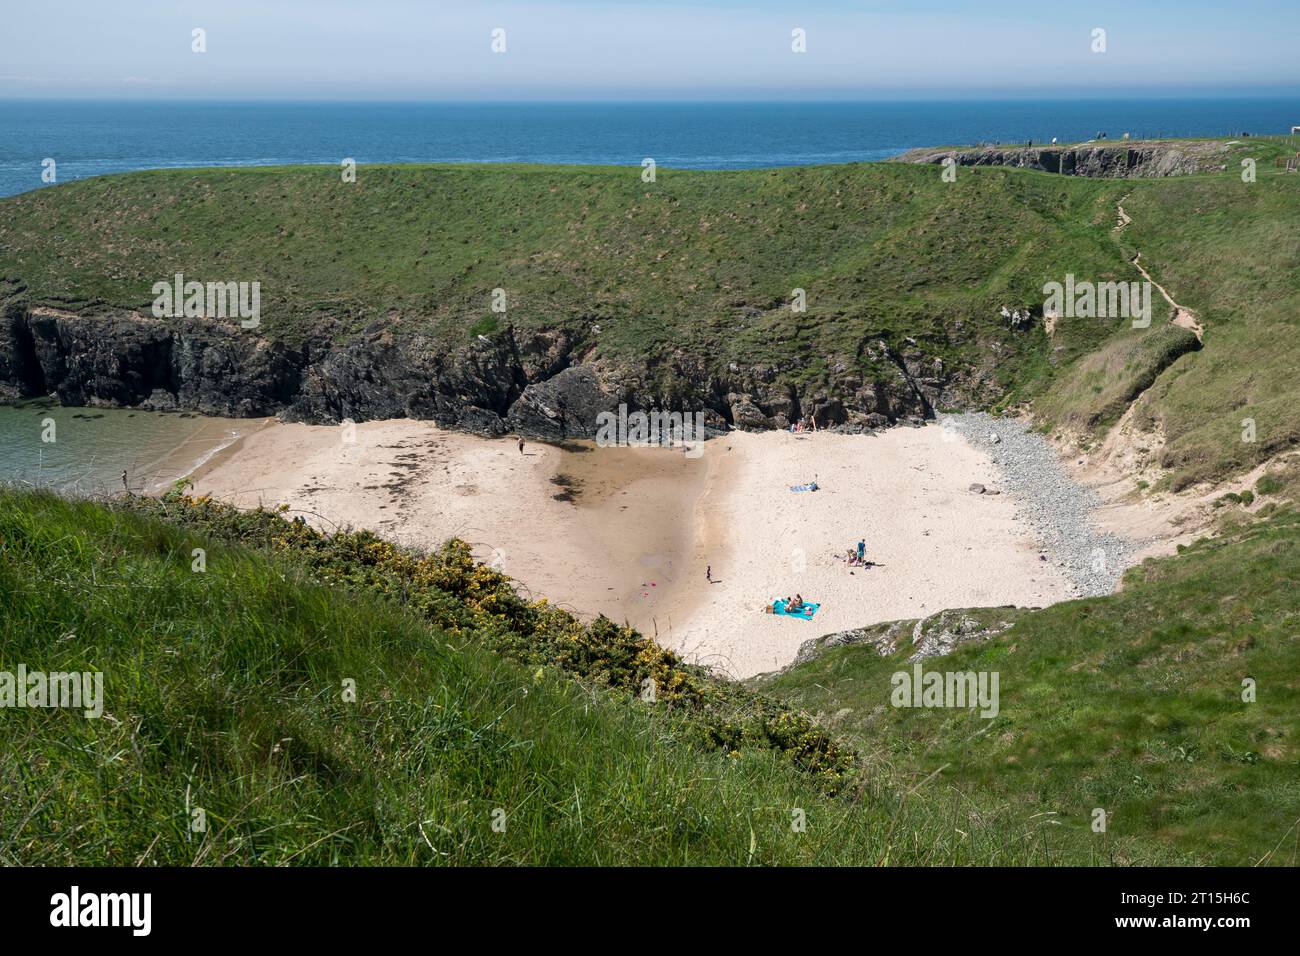 Playa de Porth Iago Península de LLeyn Gwynedd Norte de Gales Foto de stock